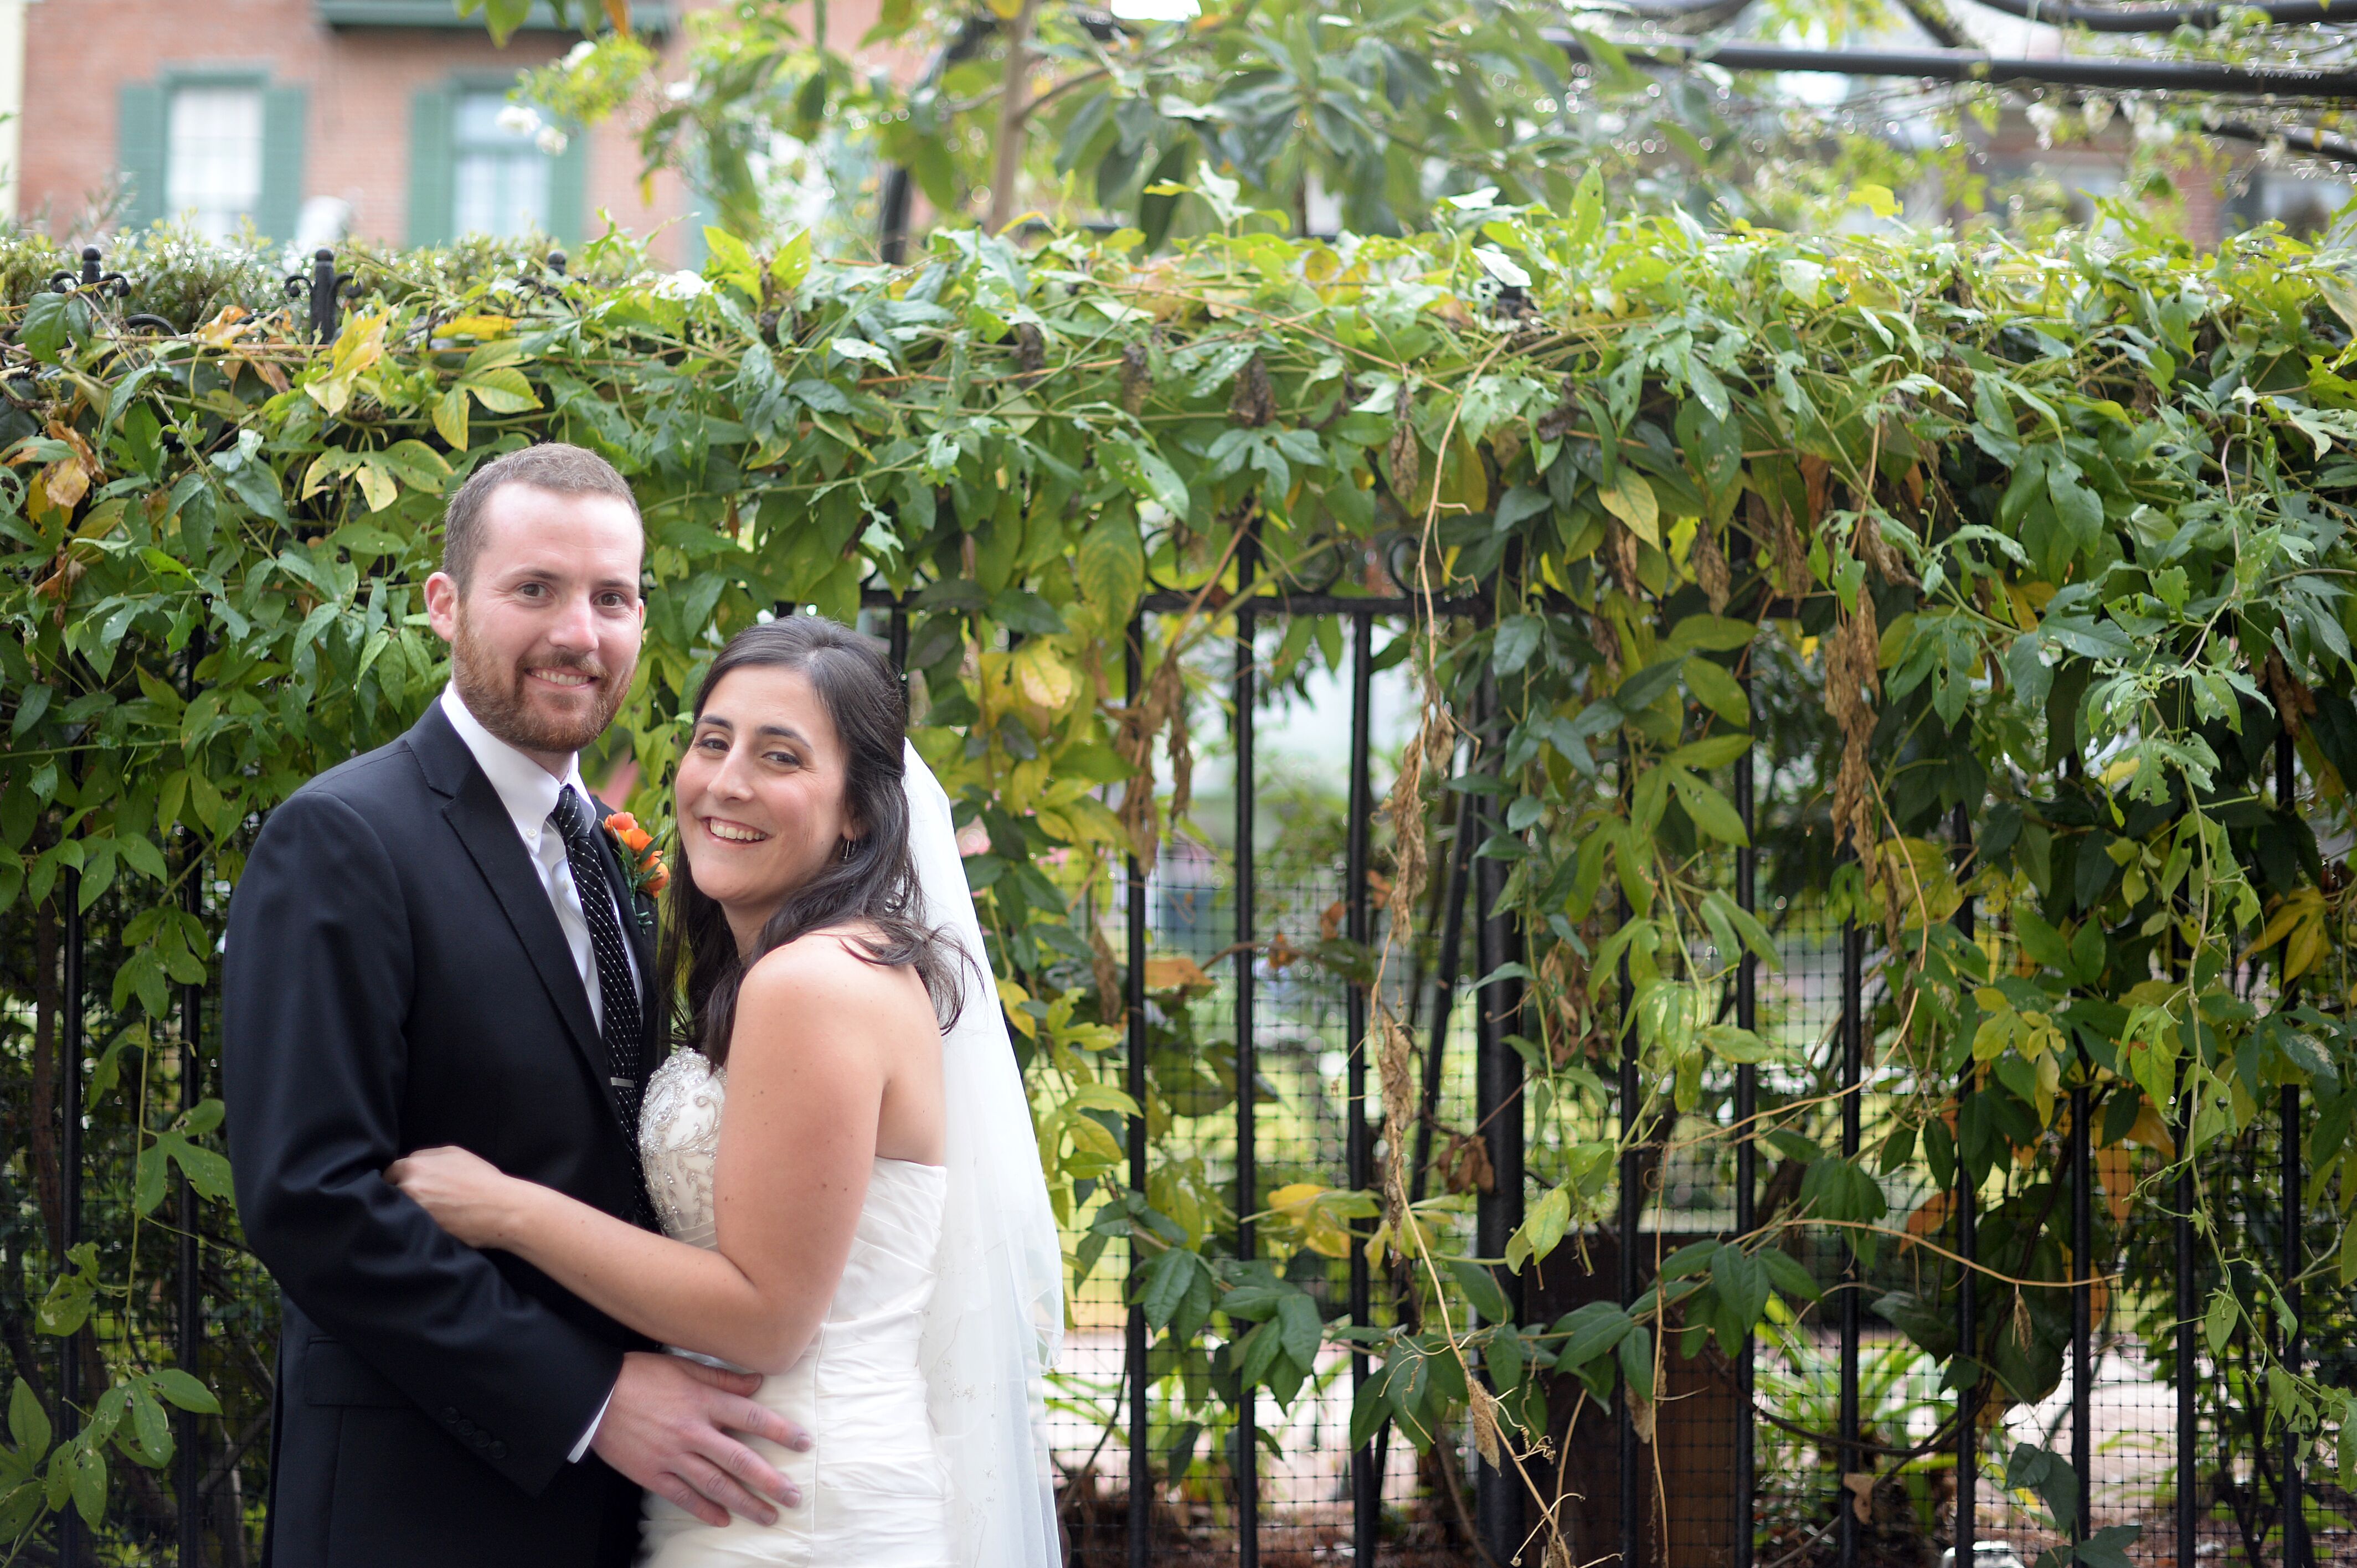 Aaron Nola Posts Photos from Wedding, Honeymoon on Instagram